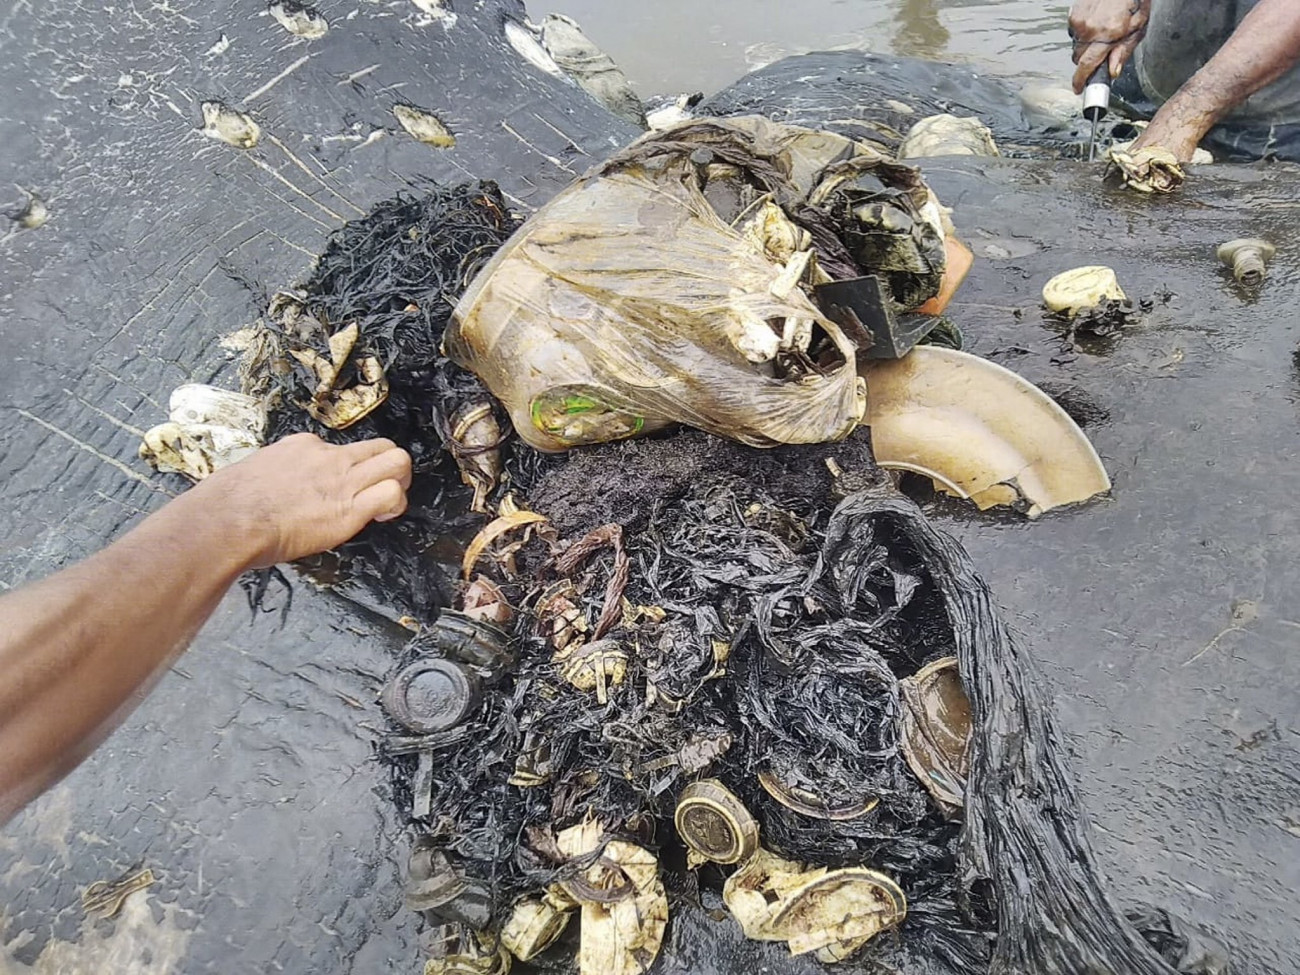 Kapota-sziget, 2018. november 21.
A Természetvédelmi Világalap, a WWF indonéziai szervezete által közreadott kép egy ámbráscet gyomrában talált szemétről a Wakatobi Nemzeti Parkhoz tartozó Kapota-sziget partján, Délkelet-Szulavézi tartományban 2018. november 20-án. A közel hat kilogramm emészthetetlen hulladék a 9,5 méteres állat pusztulását okozta.
MTI/EPA